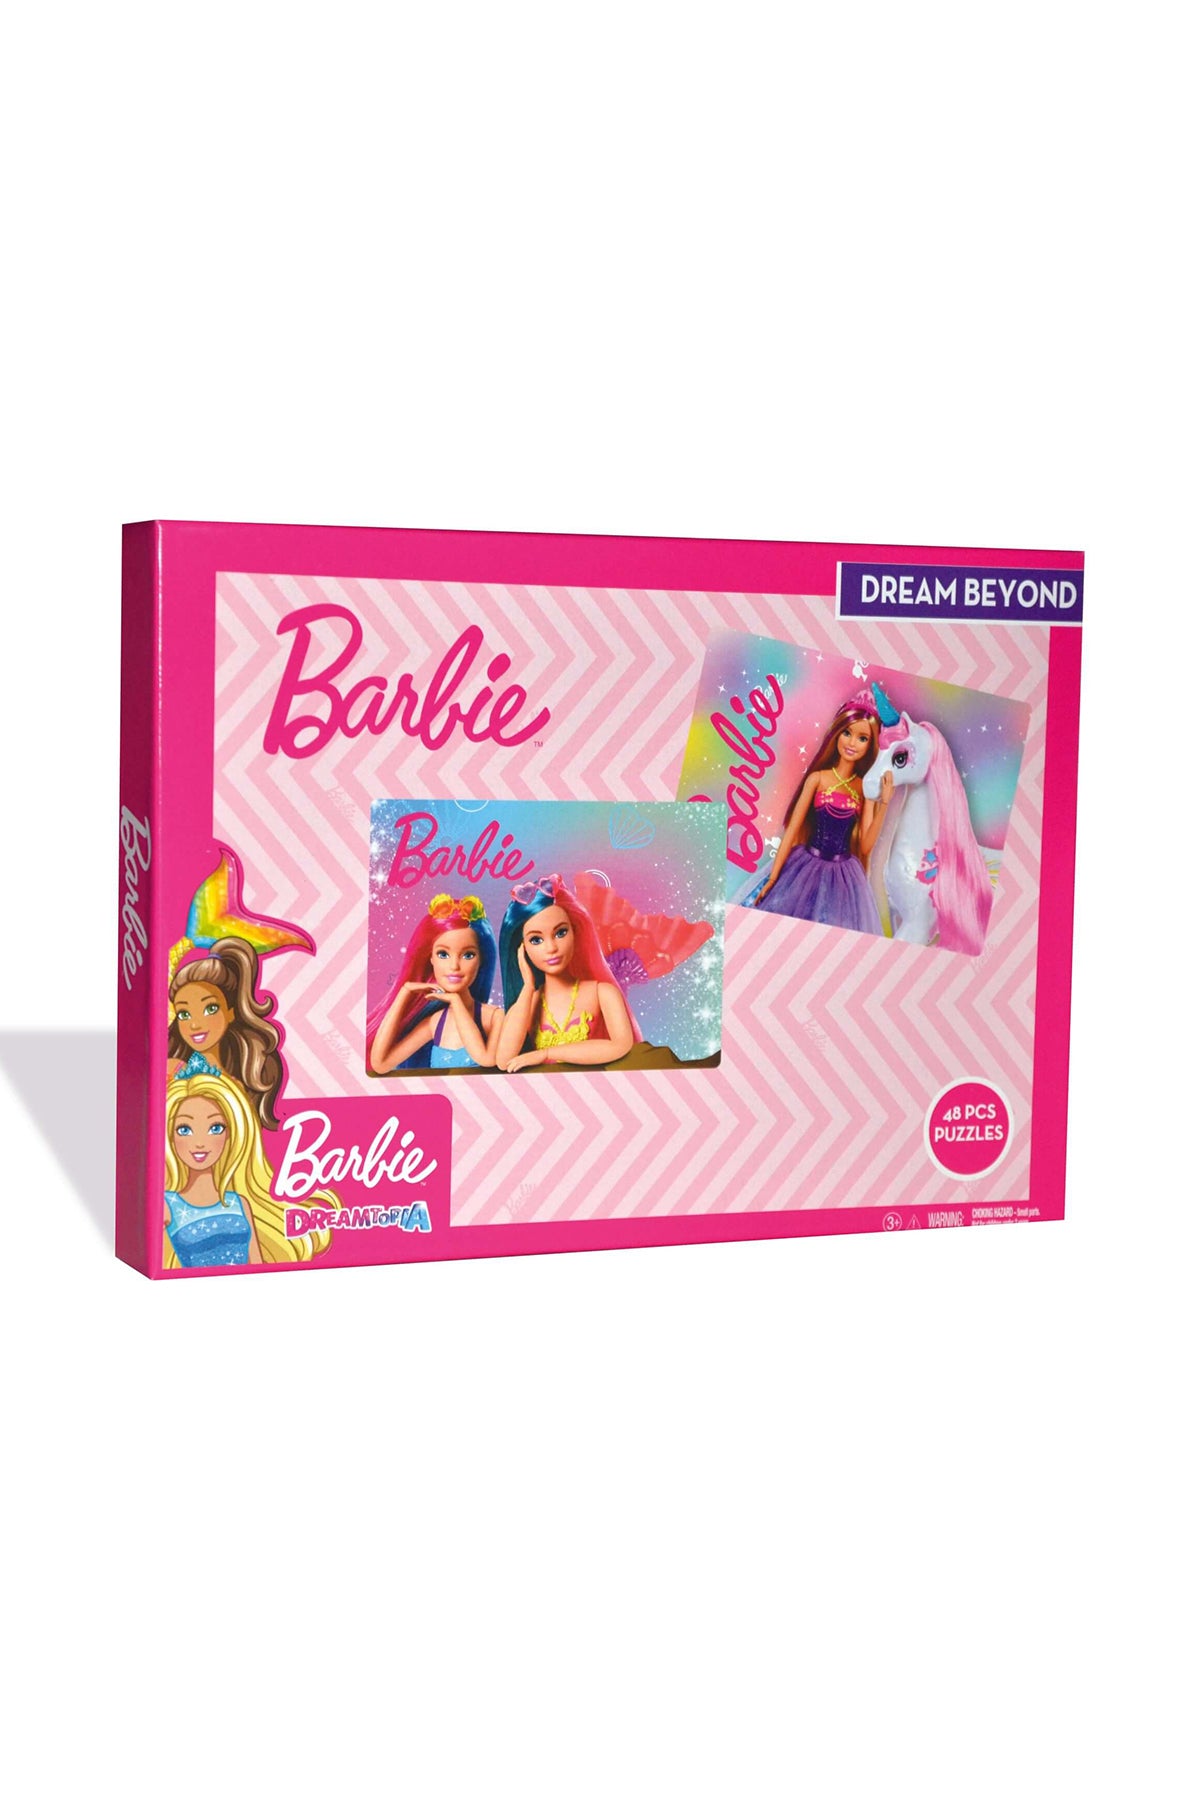 Barbie Dream Beyond Puzzle Set